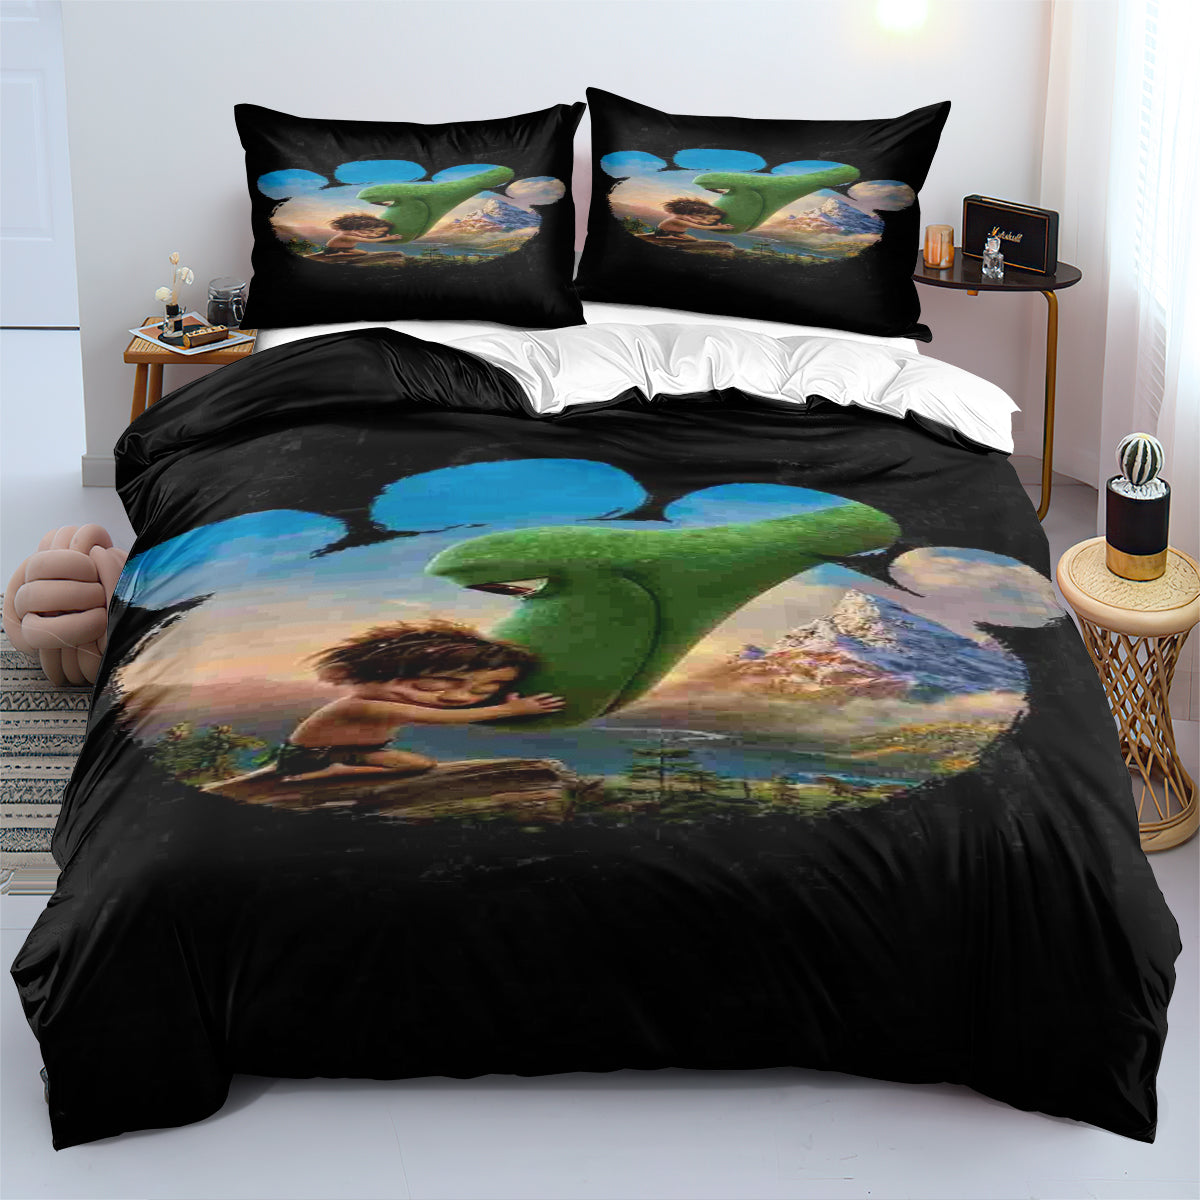 The Good Dinosaur Duvet Cover Quilt Cover Pillowcase Bedding Set